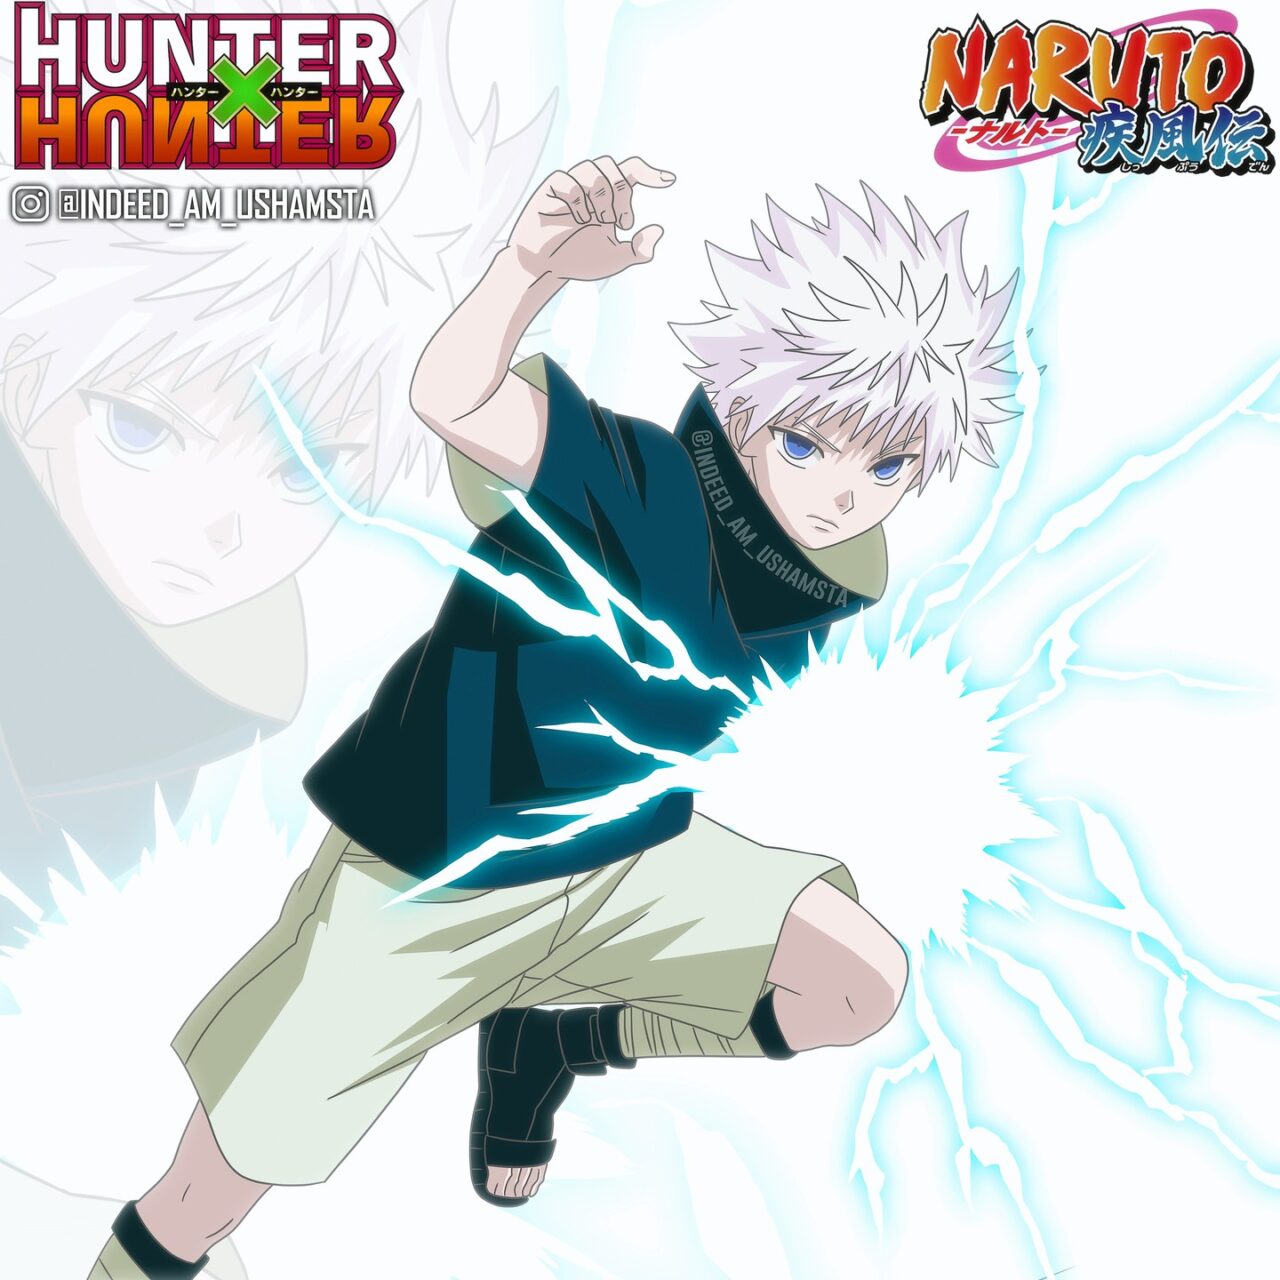 Artista imaginou como seria um crossover entre Killua de Hunter x Hunter e Sasuke de Naruto